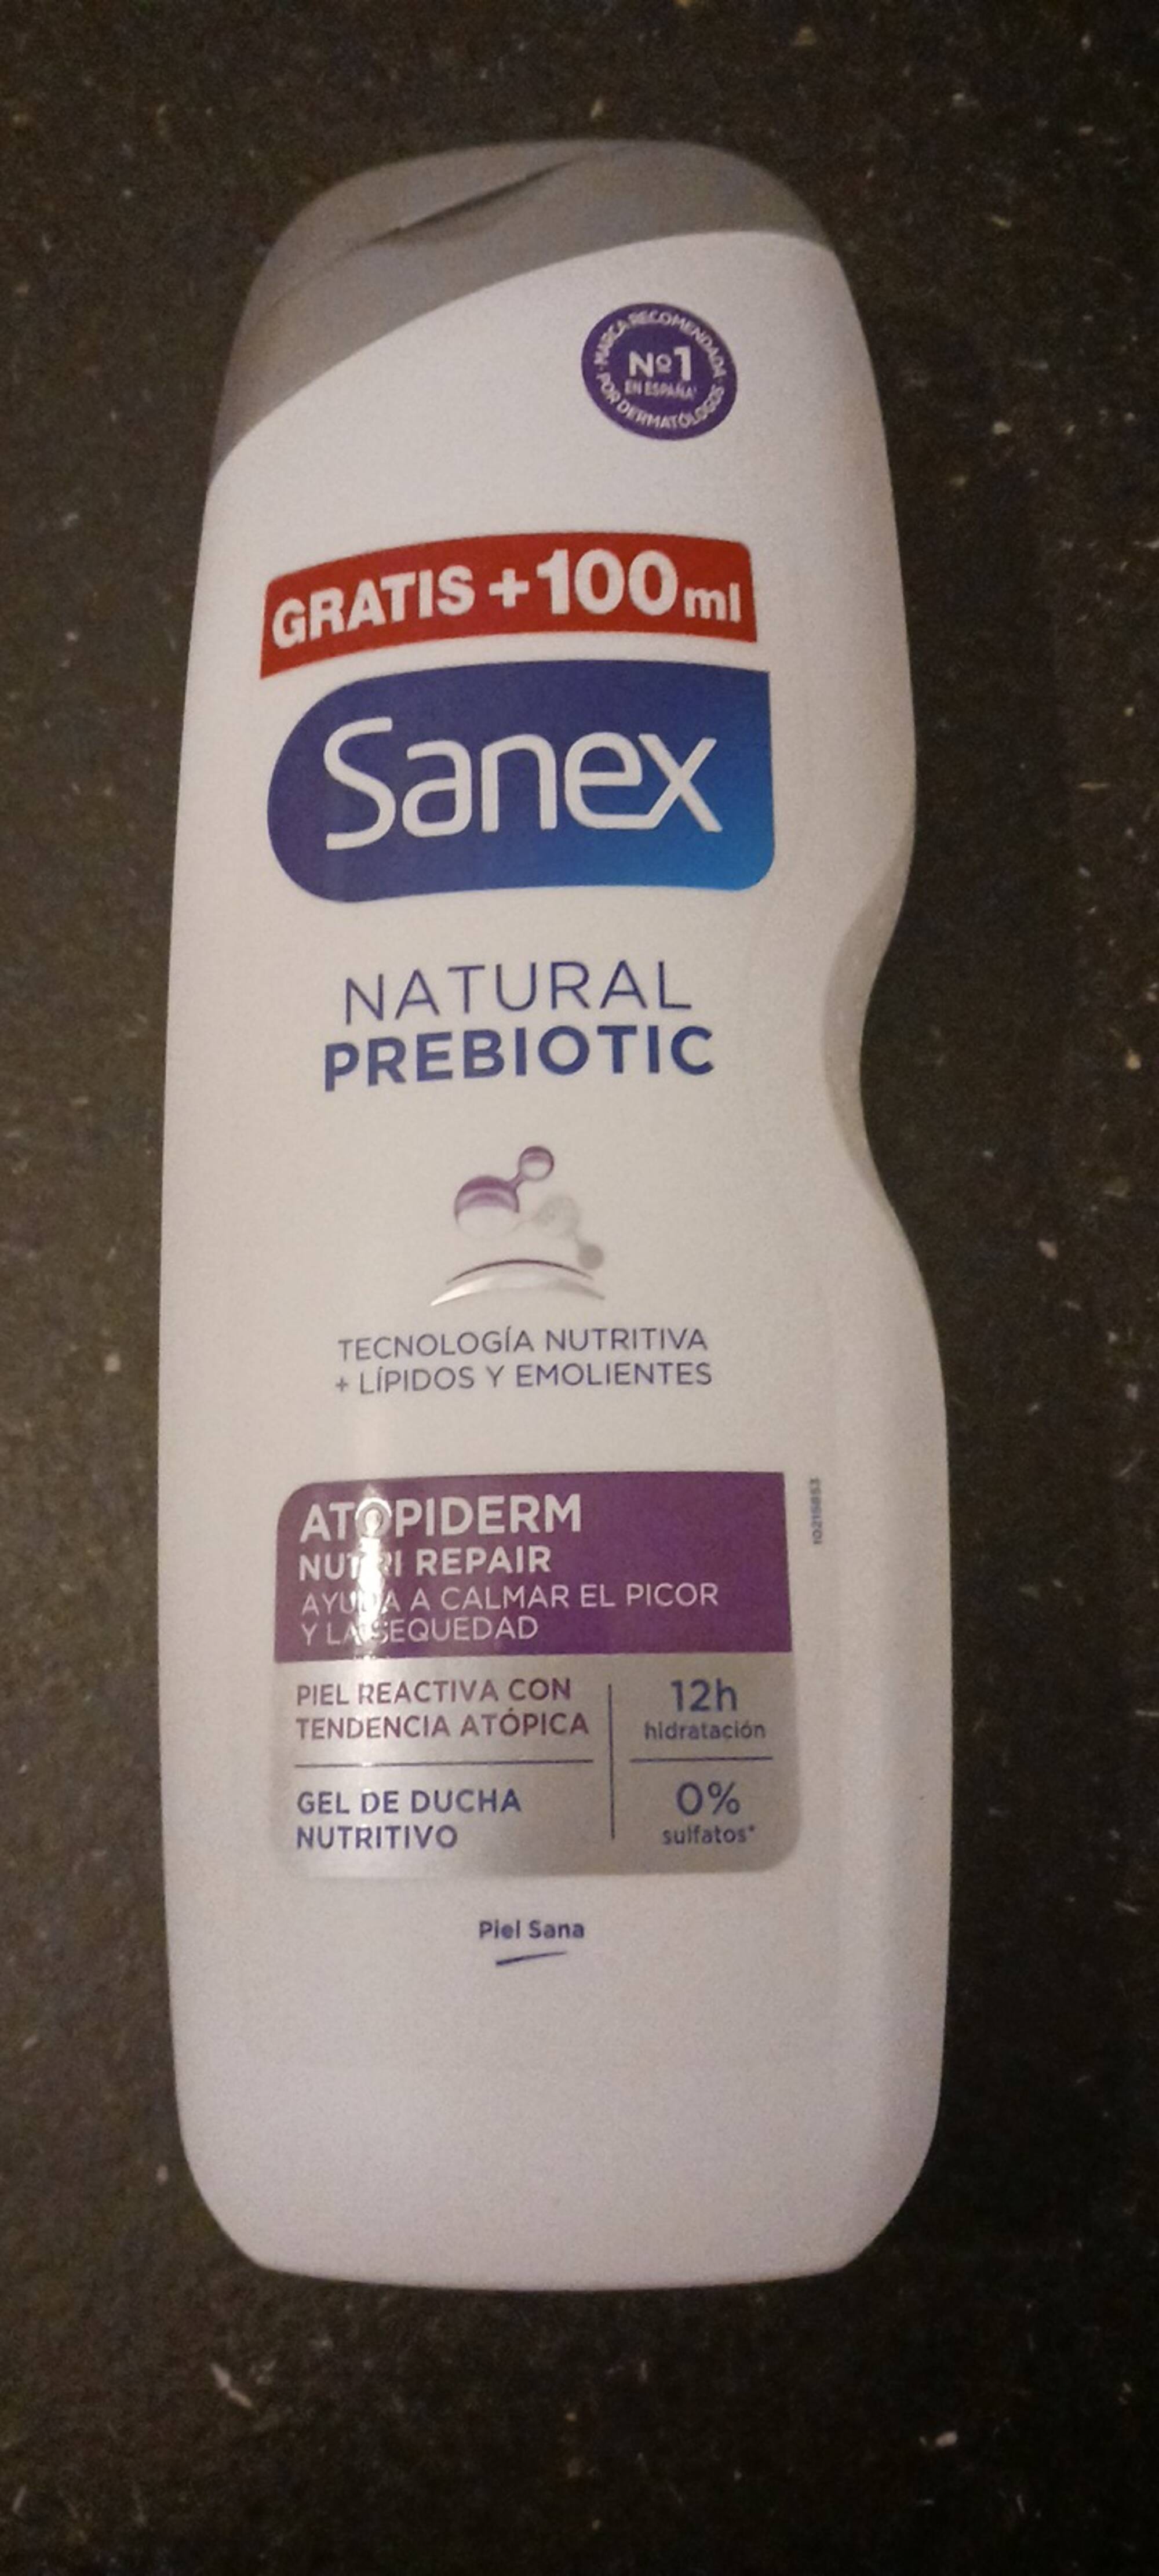 SANEX - Natural prebiotic - Gel de ducha nutritivo